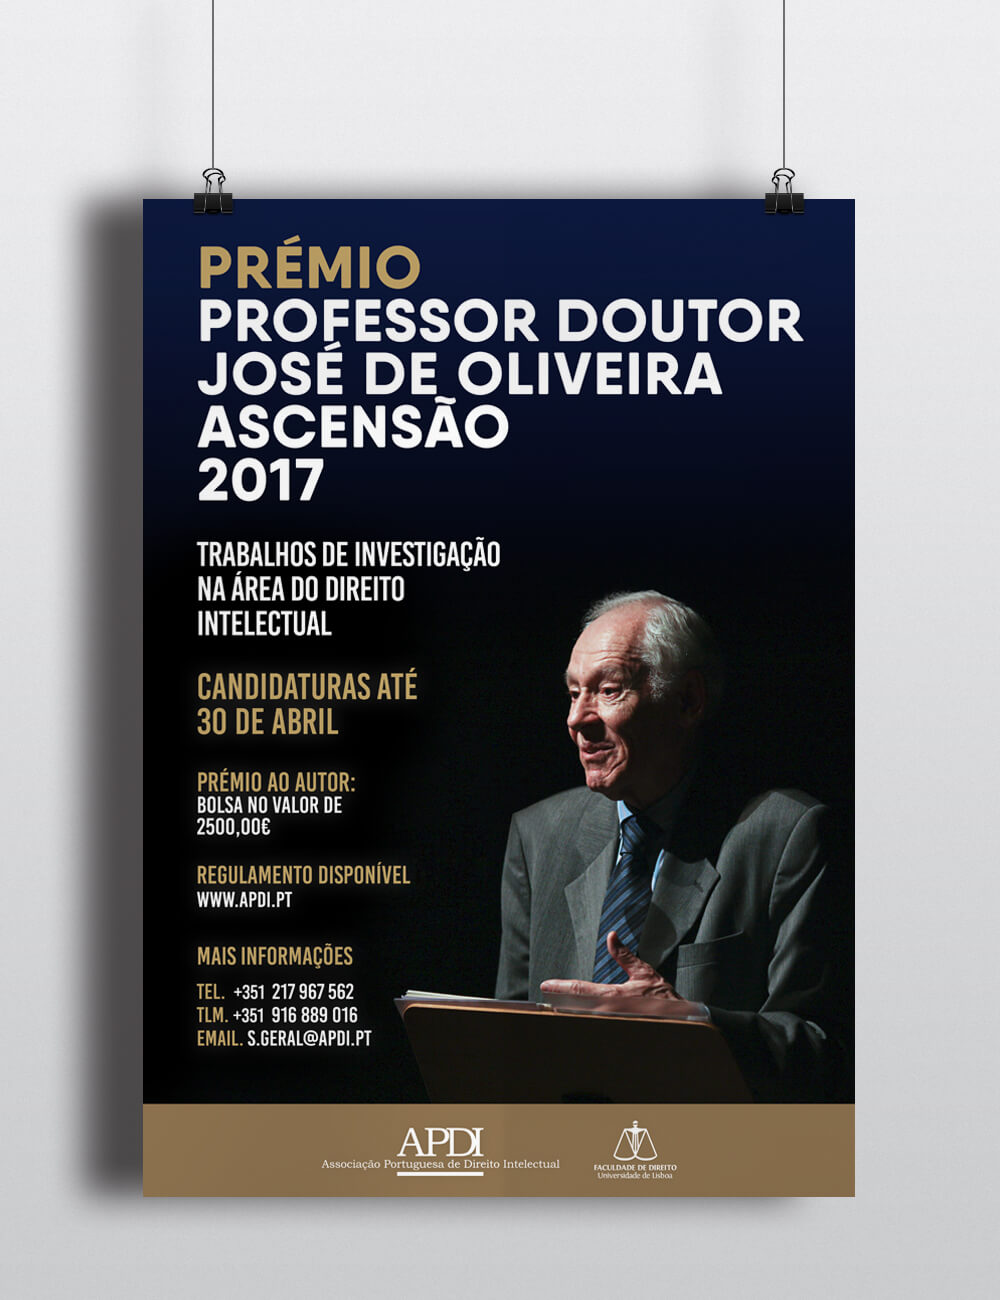 PRÉMIO PROFESSOR DOUTOR JOSÉ DE OLIVEIRA ASCENSÃO 2017